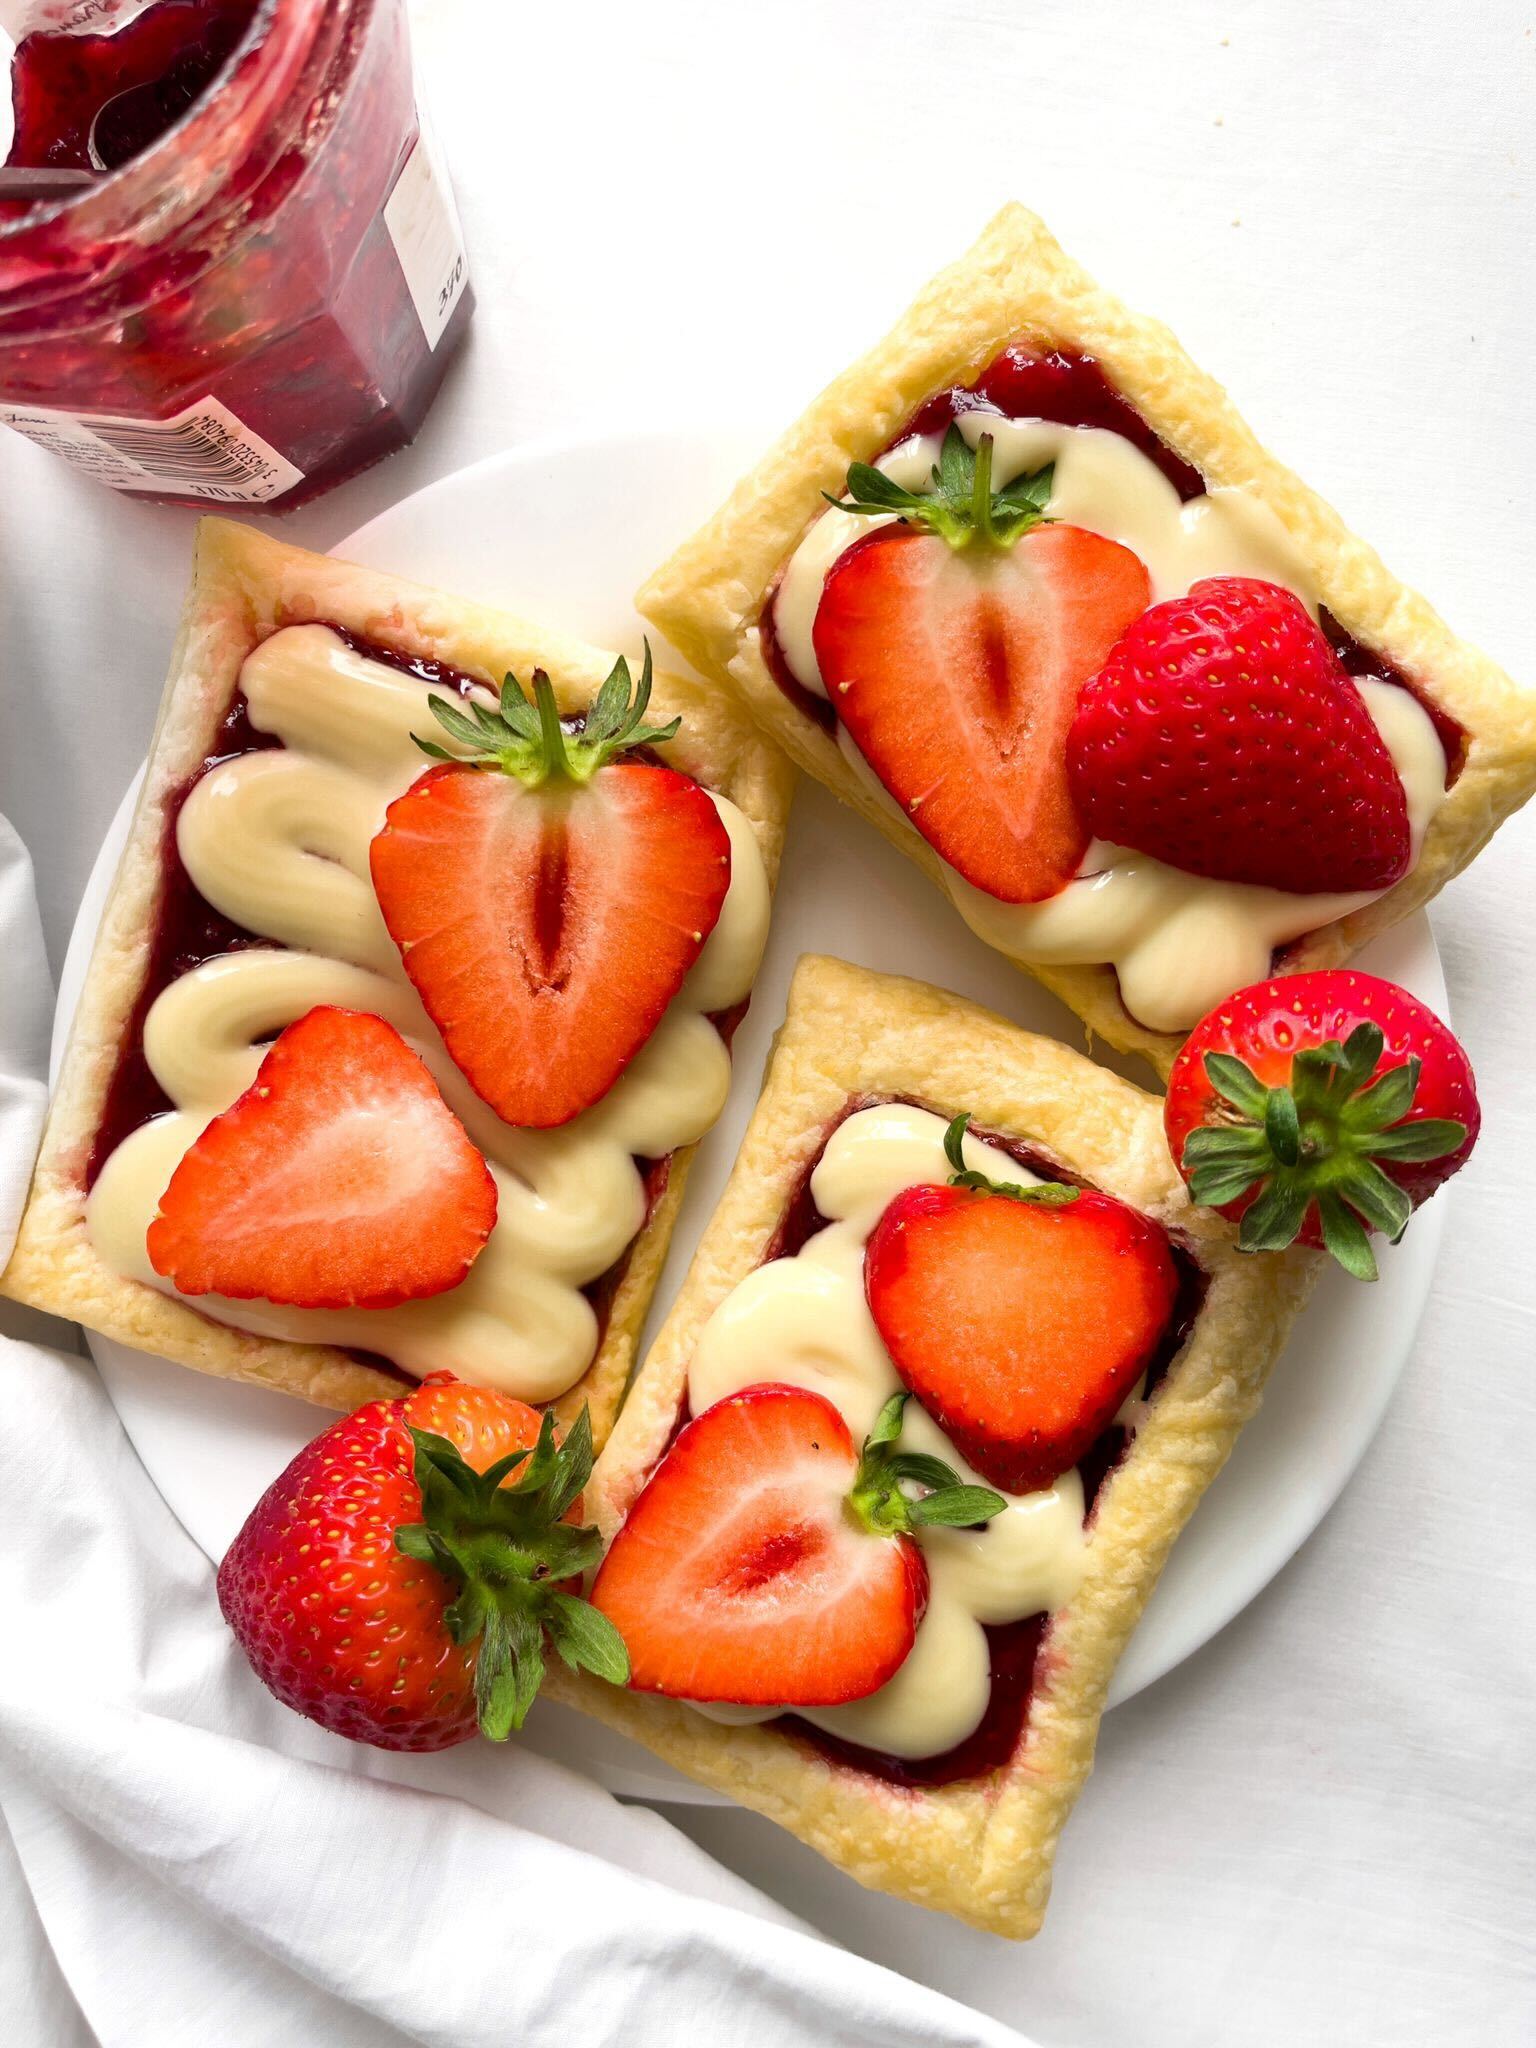 Strawberries and cream tarts